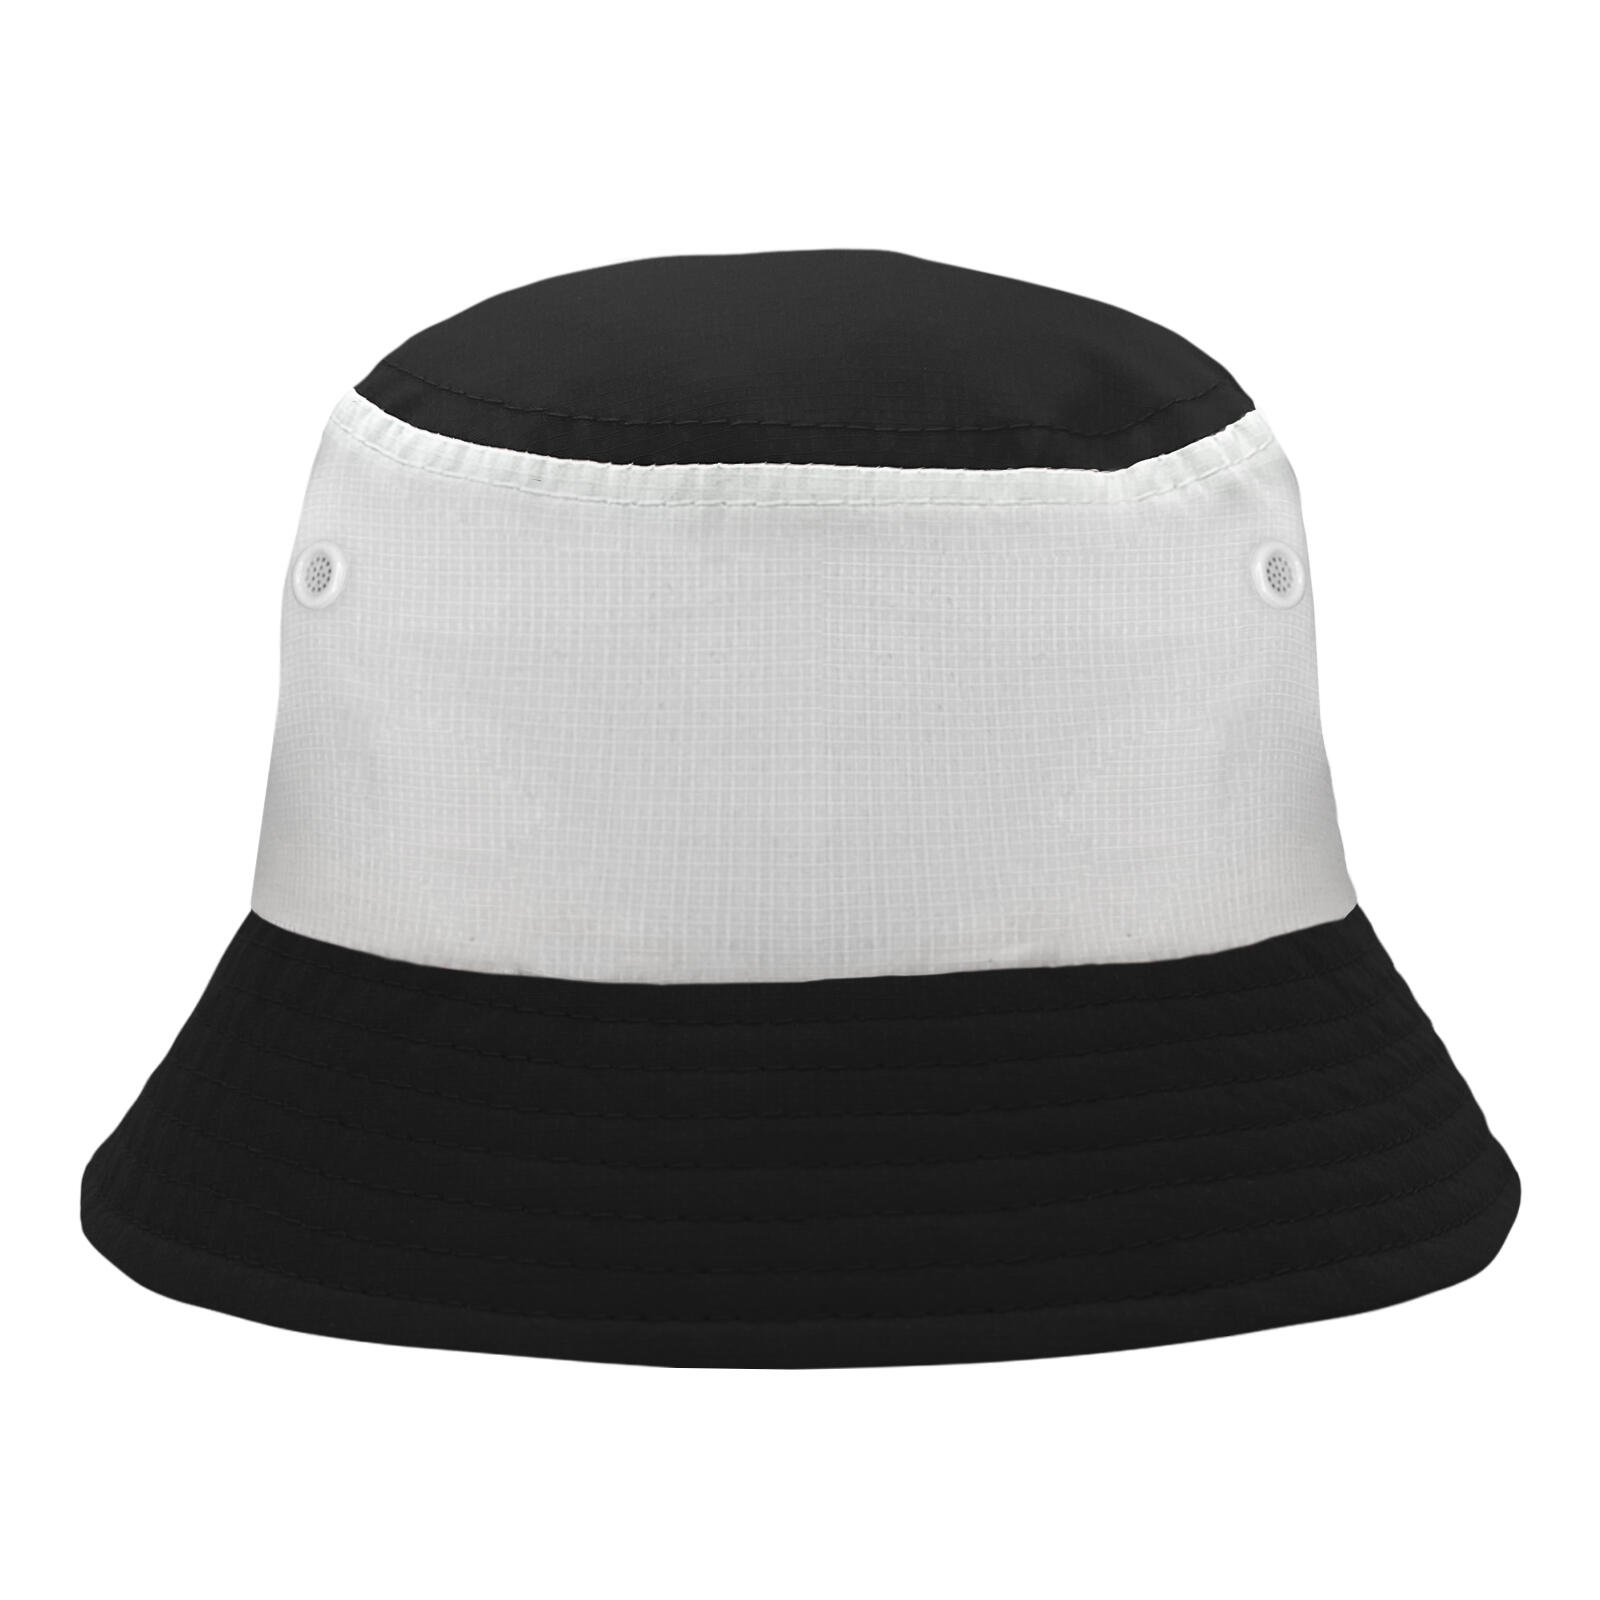 FAN ORIGINALS Fan Originals Bucket Hat Tricolour Black White Newcastle Colours